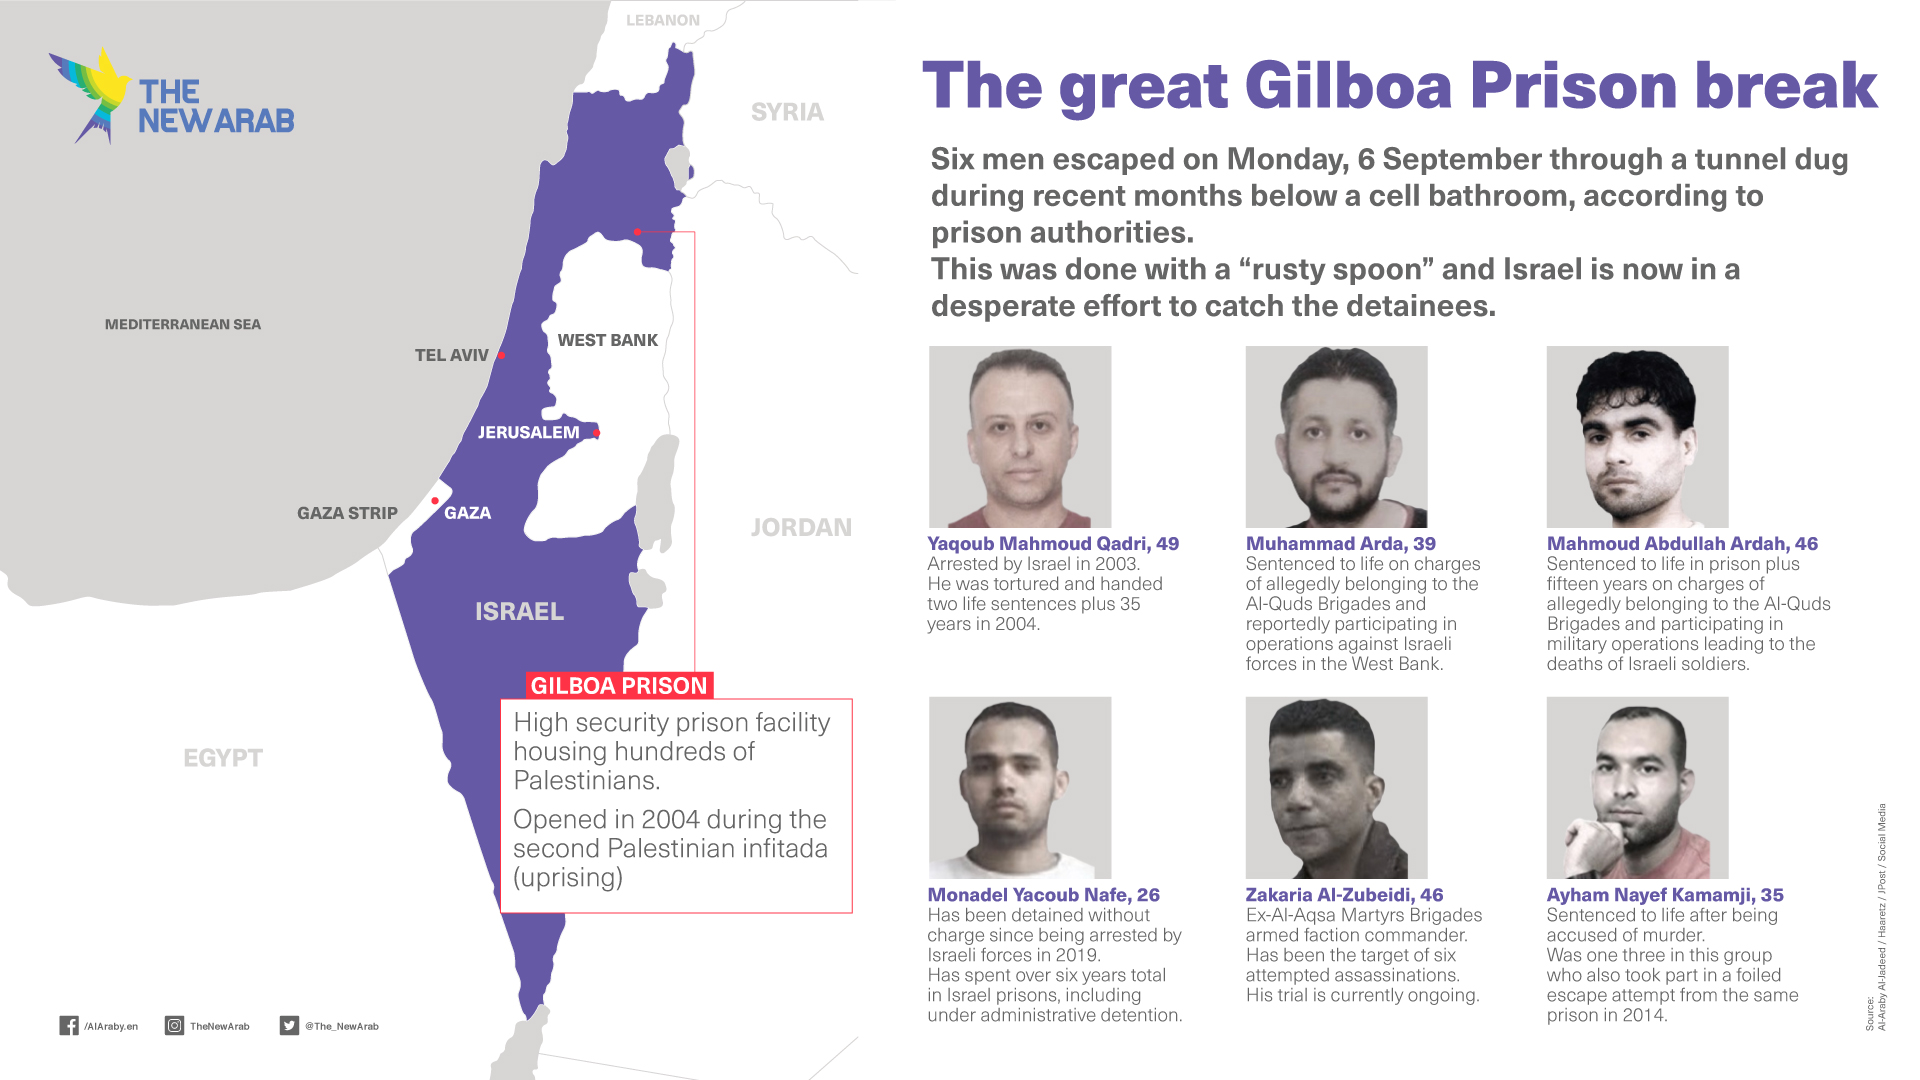 The great Gilboa prison escape